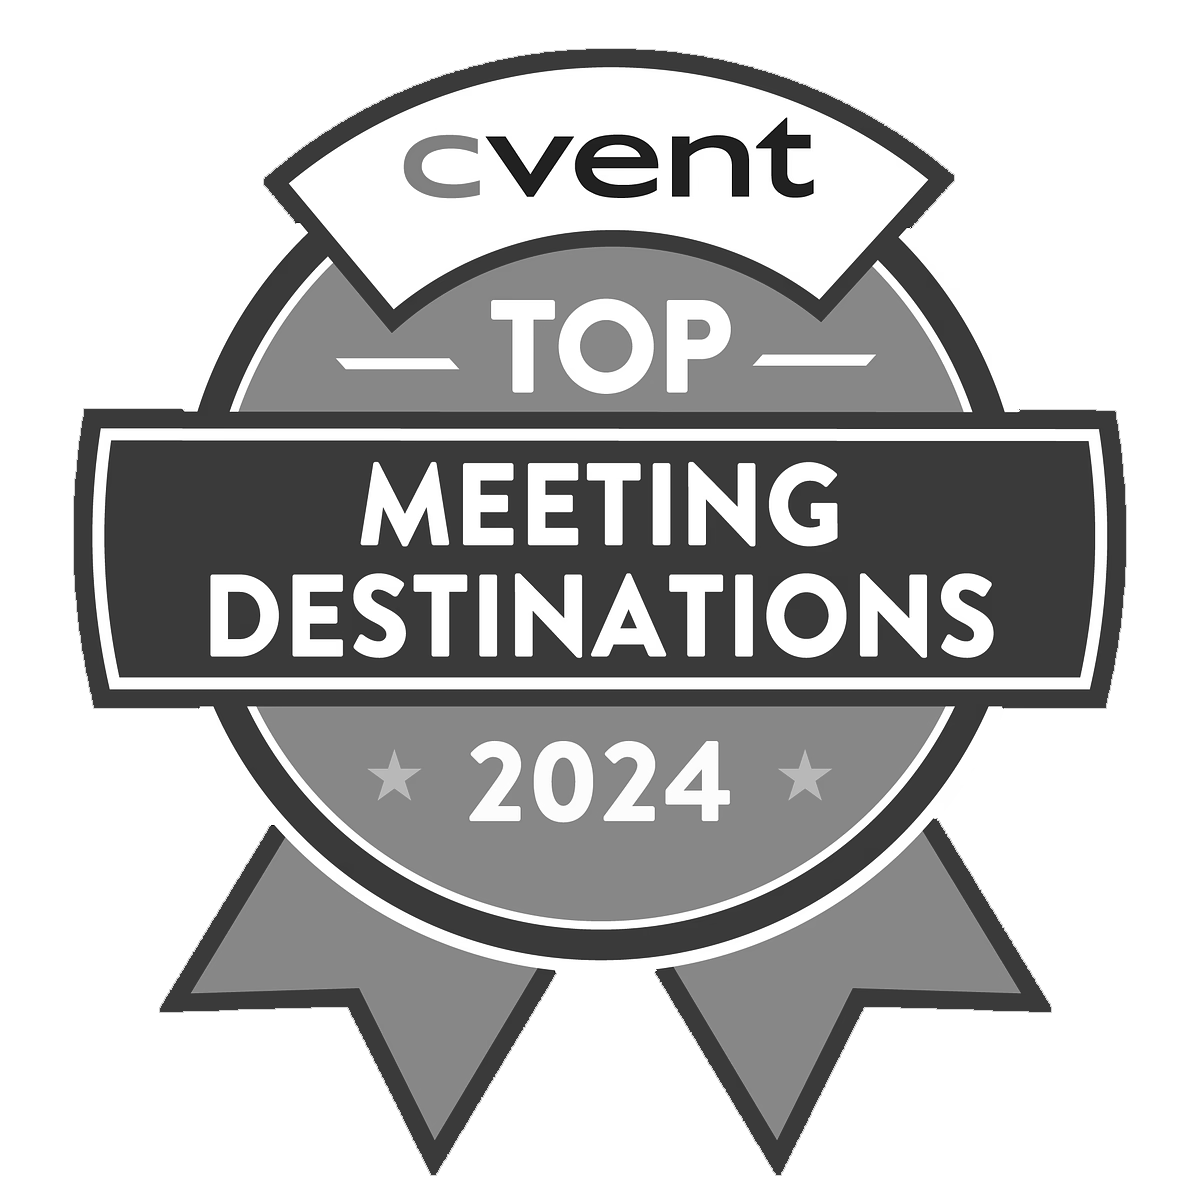 Top Meeting Destinations